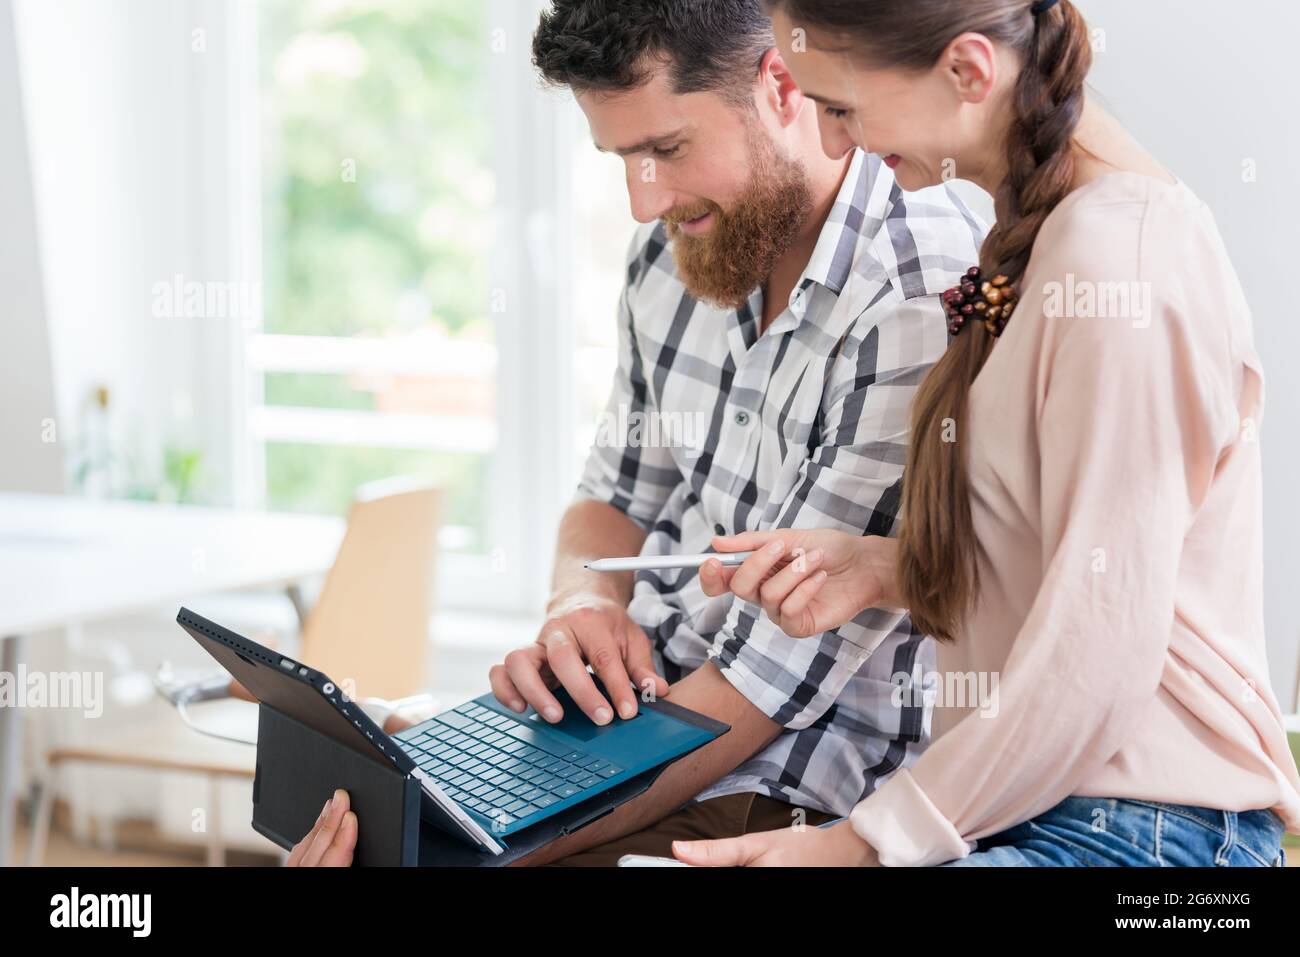 Giovane allegro che usa un tablet con tastiera e connessione wireless a Internet, mentre collabora con la sua collega femminile in un lavoro condiviso Foto Stock